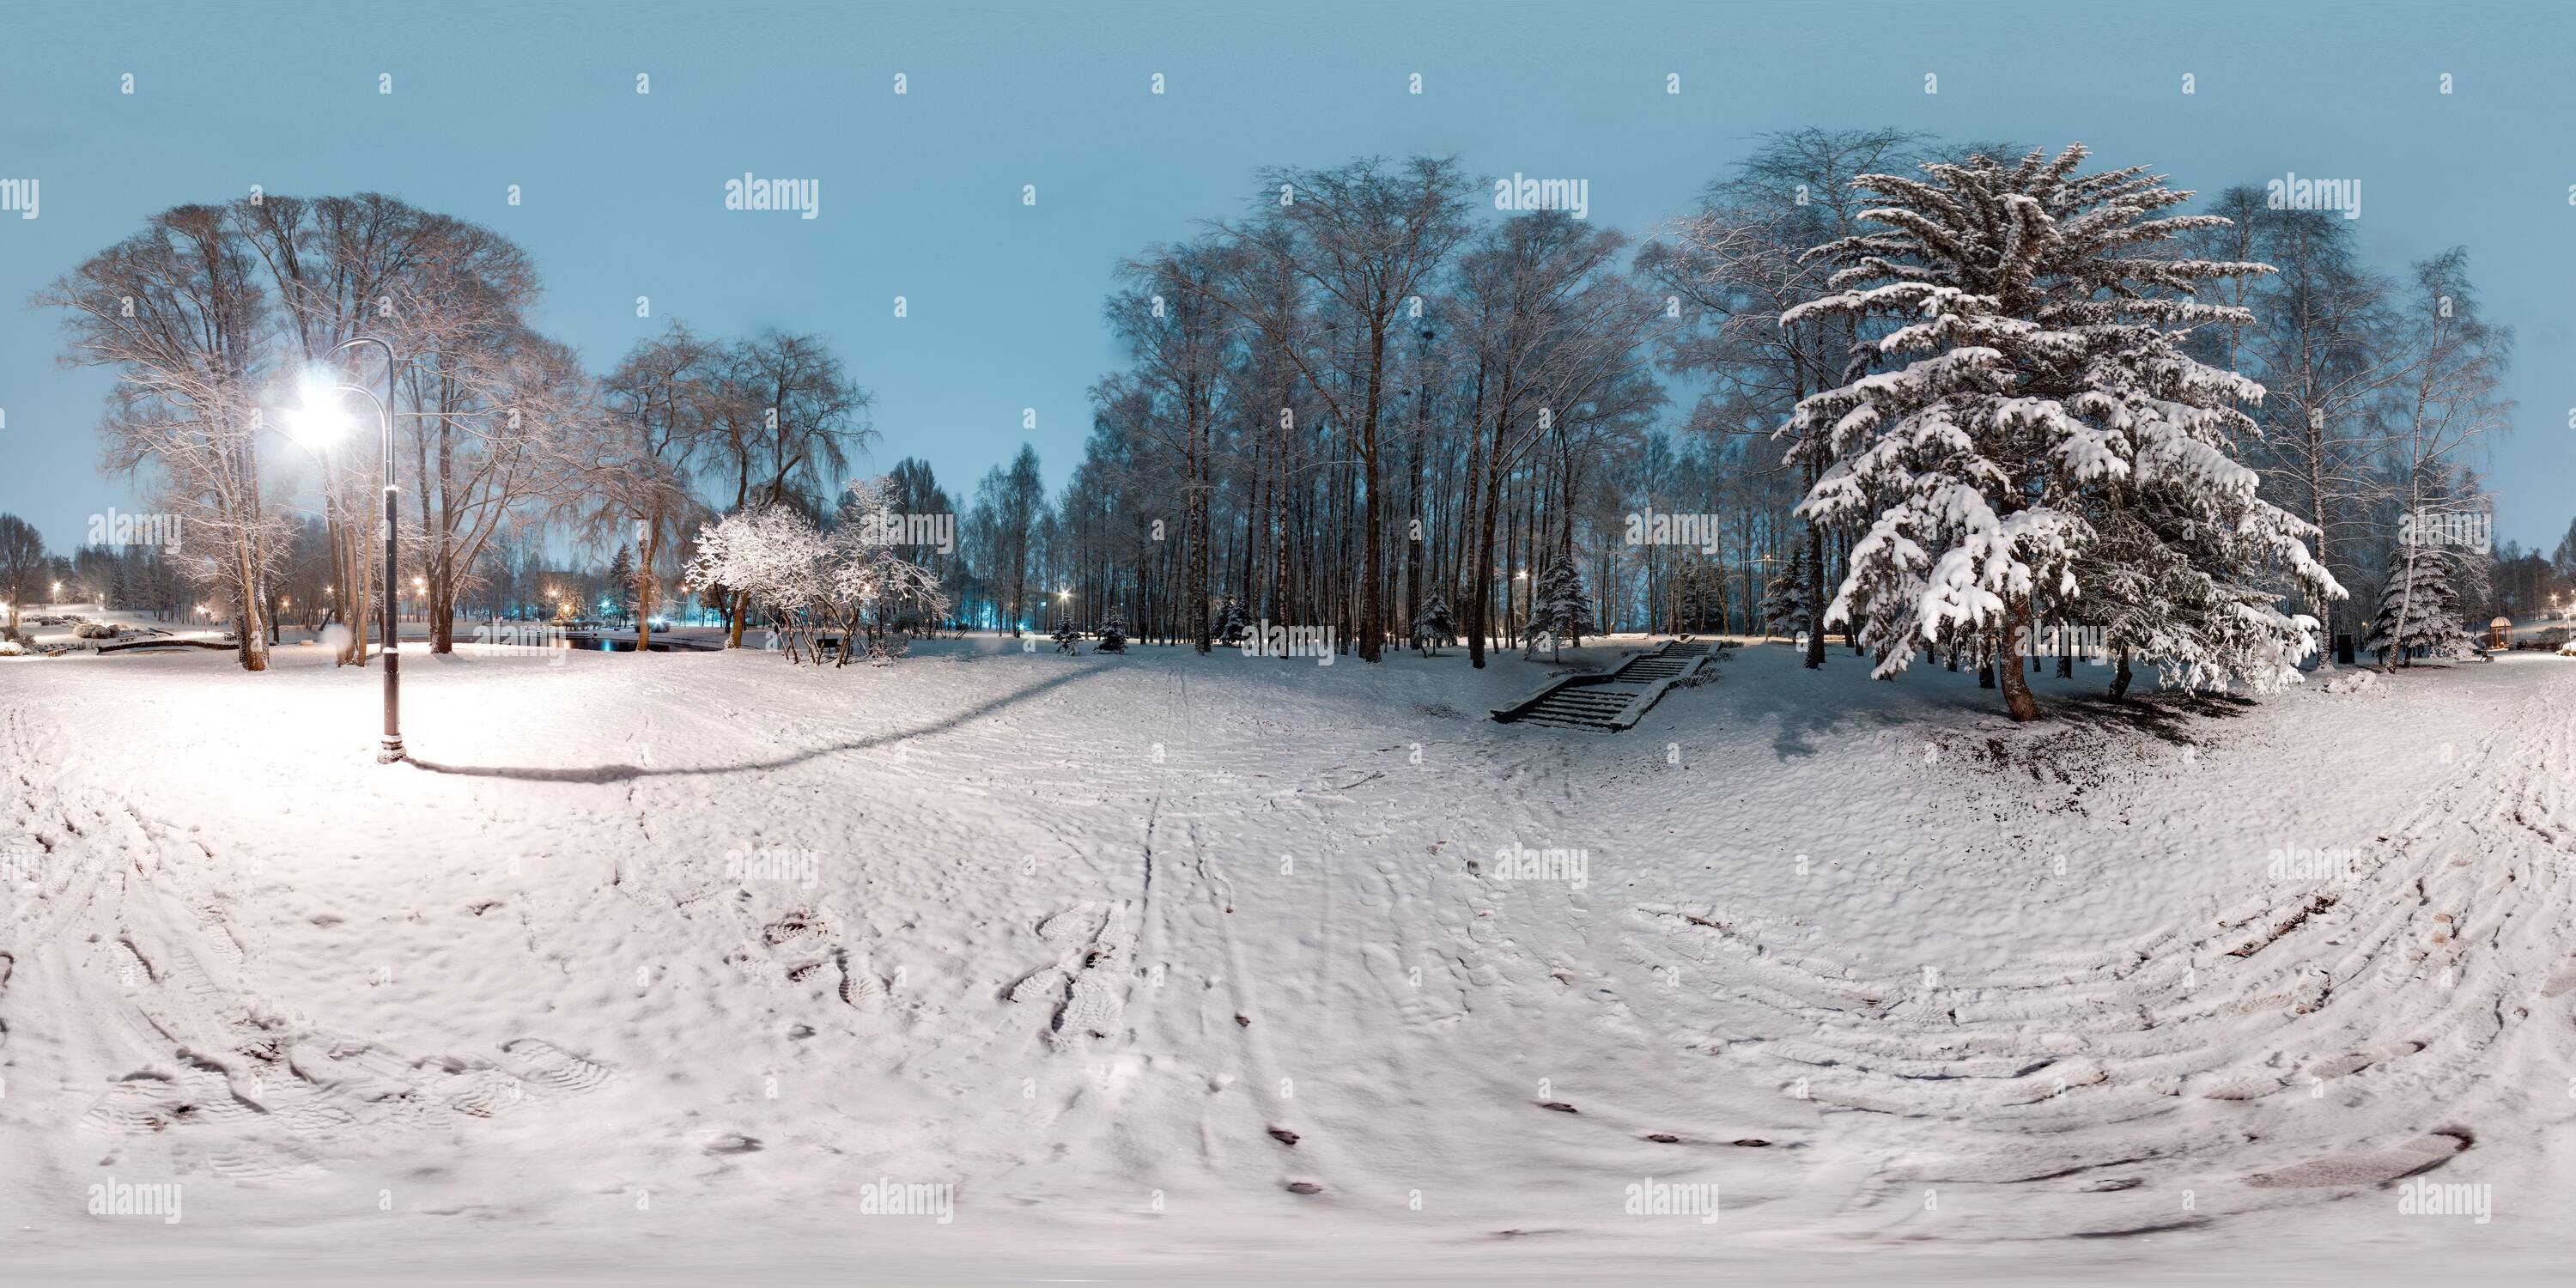 Vue panoramique à 360° de Image avec panorama sphérique en 3 dimensions avec angle de vue de 360 degrés. Hiver enneigé dans le parc avec arbres le soir. Lanternes brûlantes. Entièrement équirectangulaire